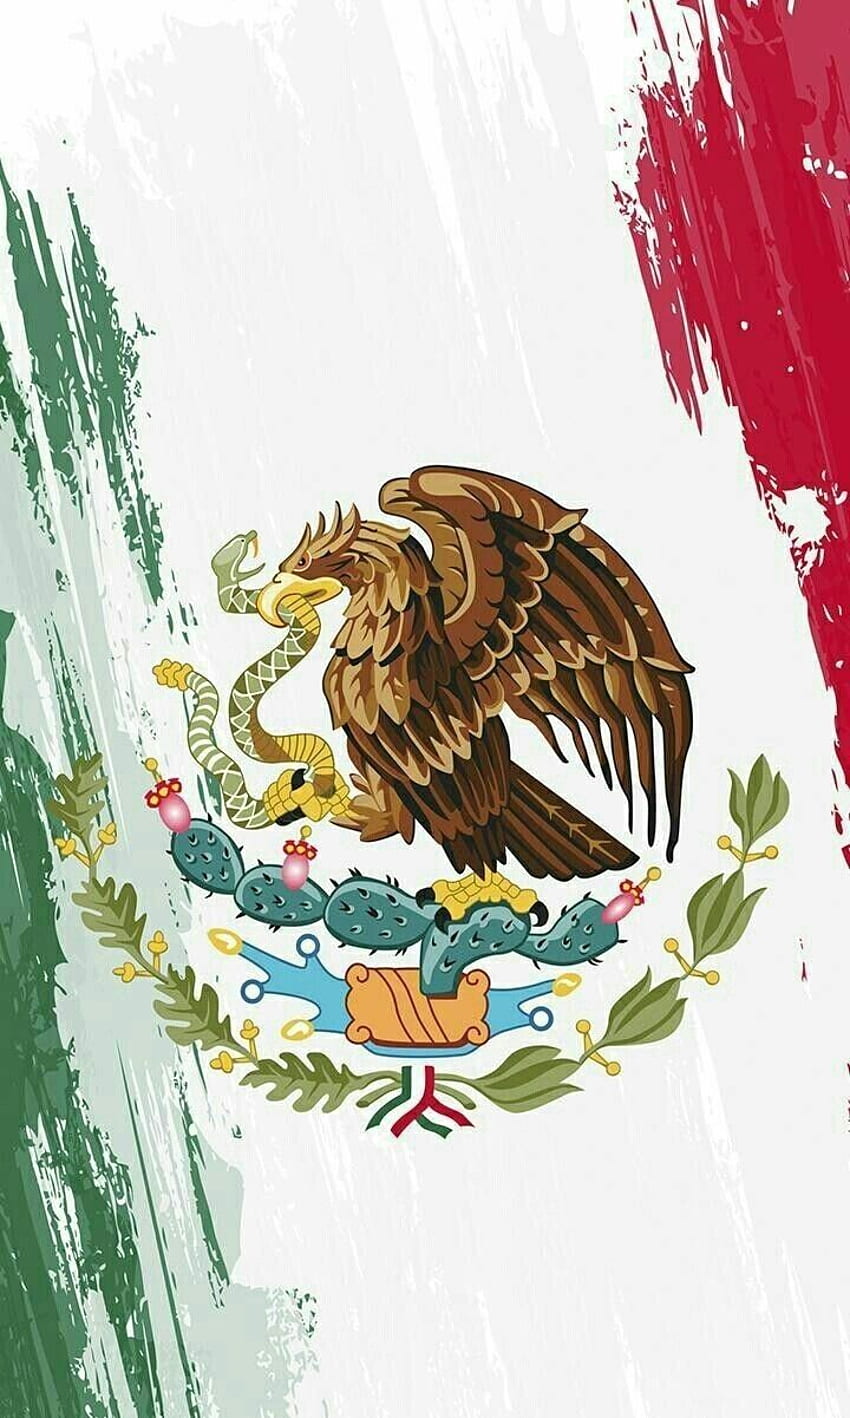 TAKA SAMA On . Karya Seni Meksiko, Meksiko, Budaya Meksiko wallpaper ponsel HD